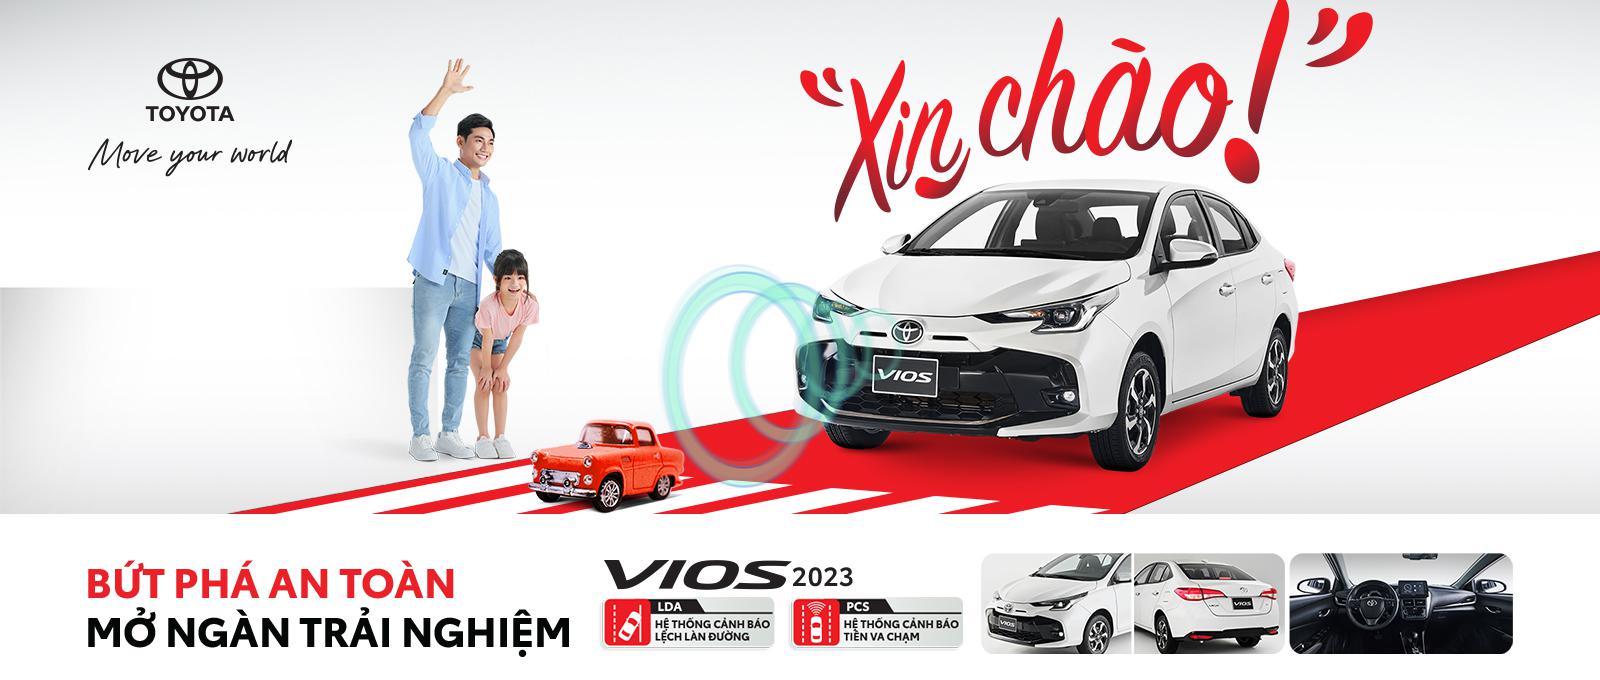 Toyota Hưng Yên giới thiệu Vios 2023 hoàn toàn mới